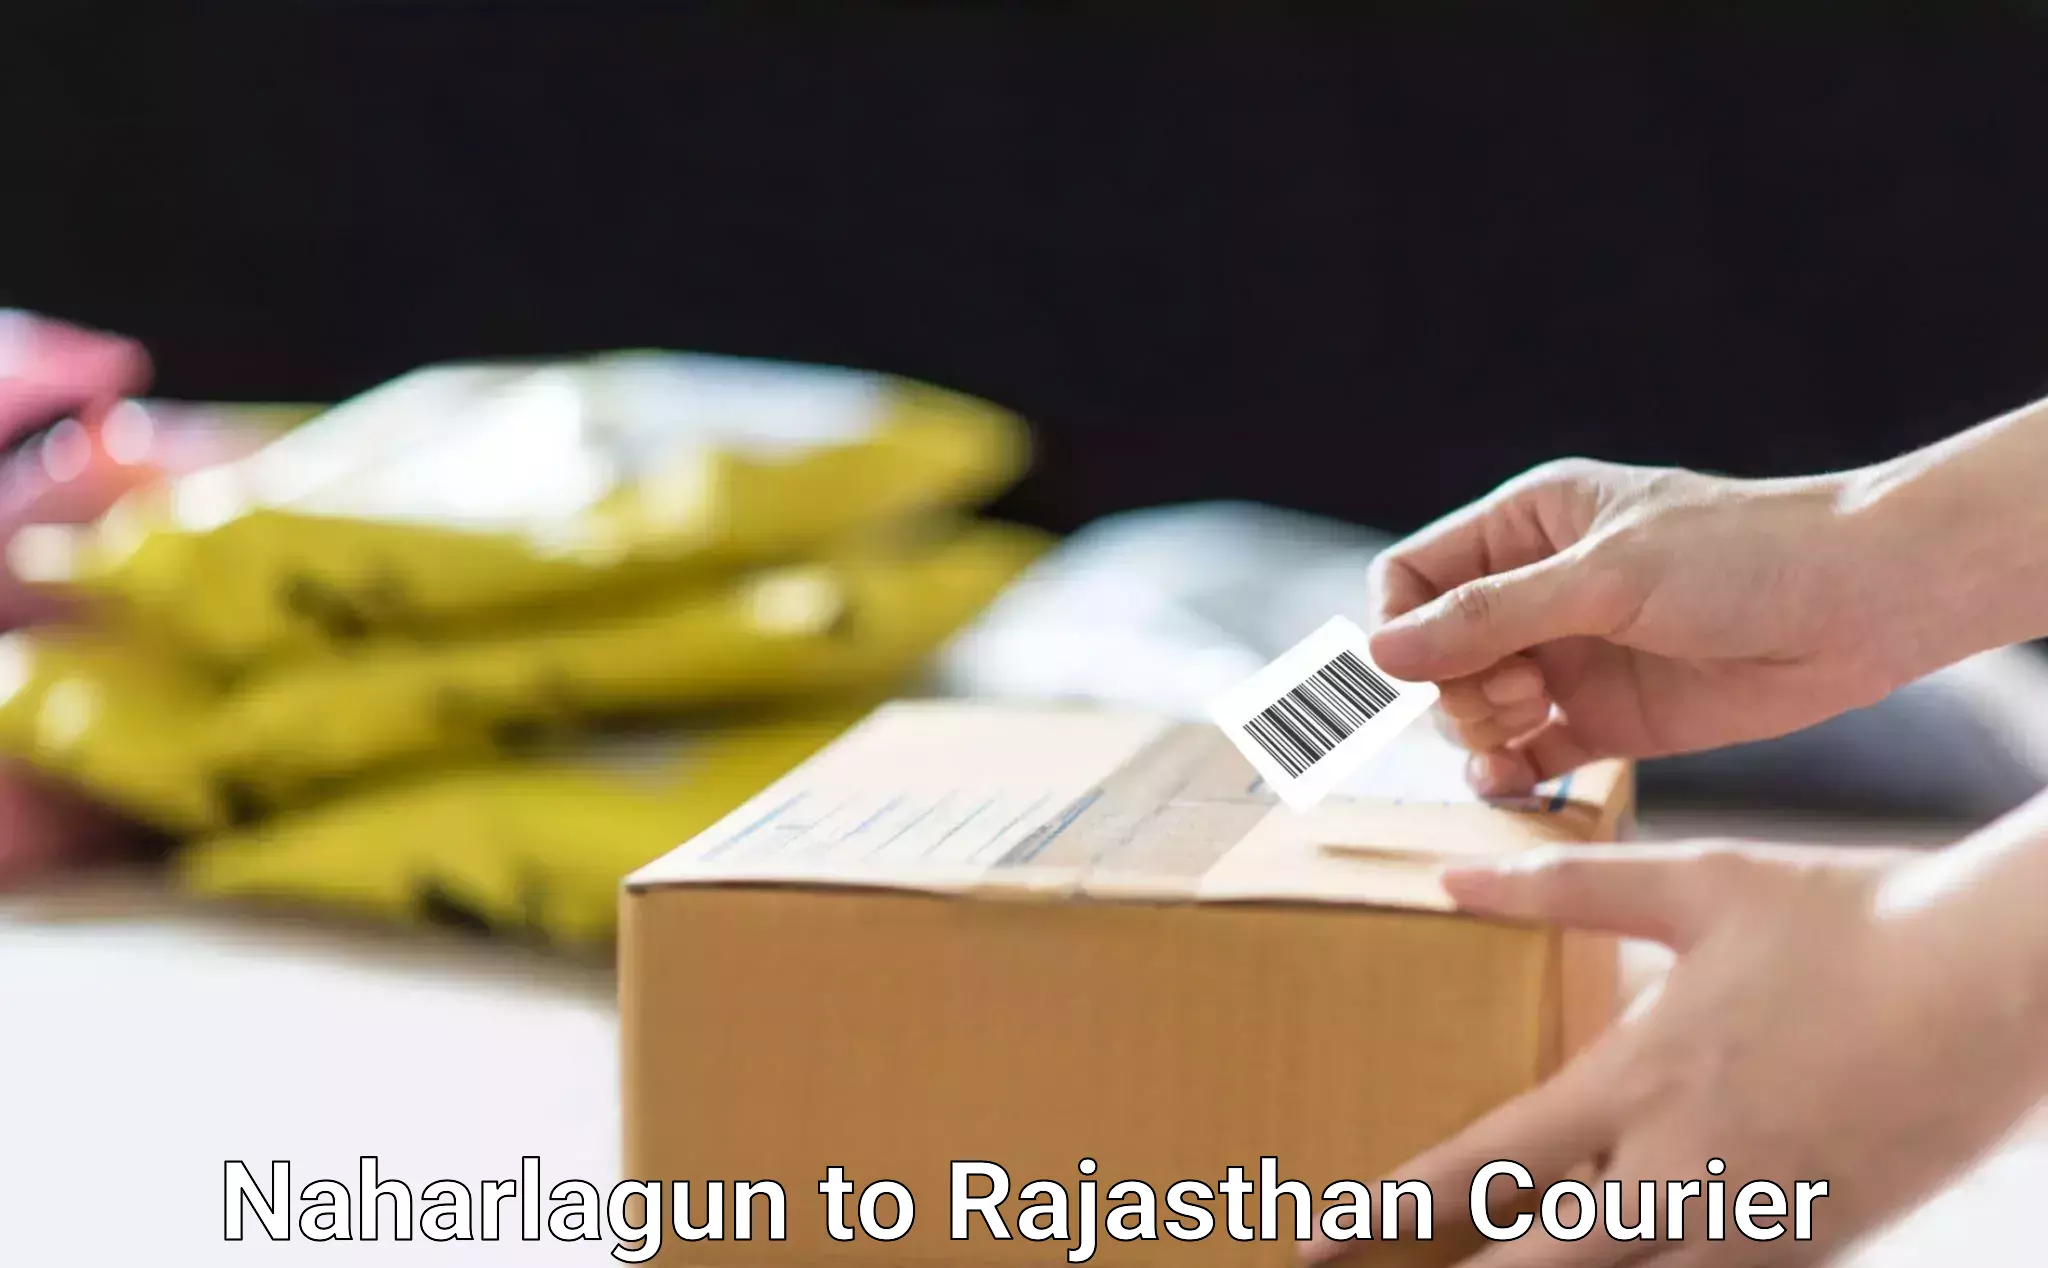 Fragile item shipping Naharlagun to Pratapgarh Rajasthan